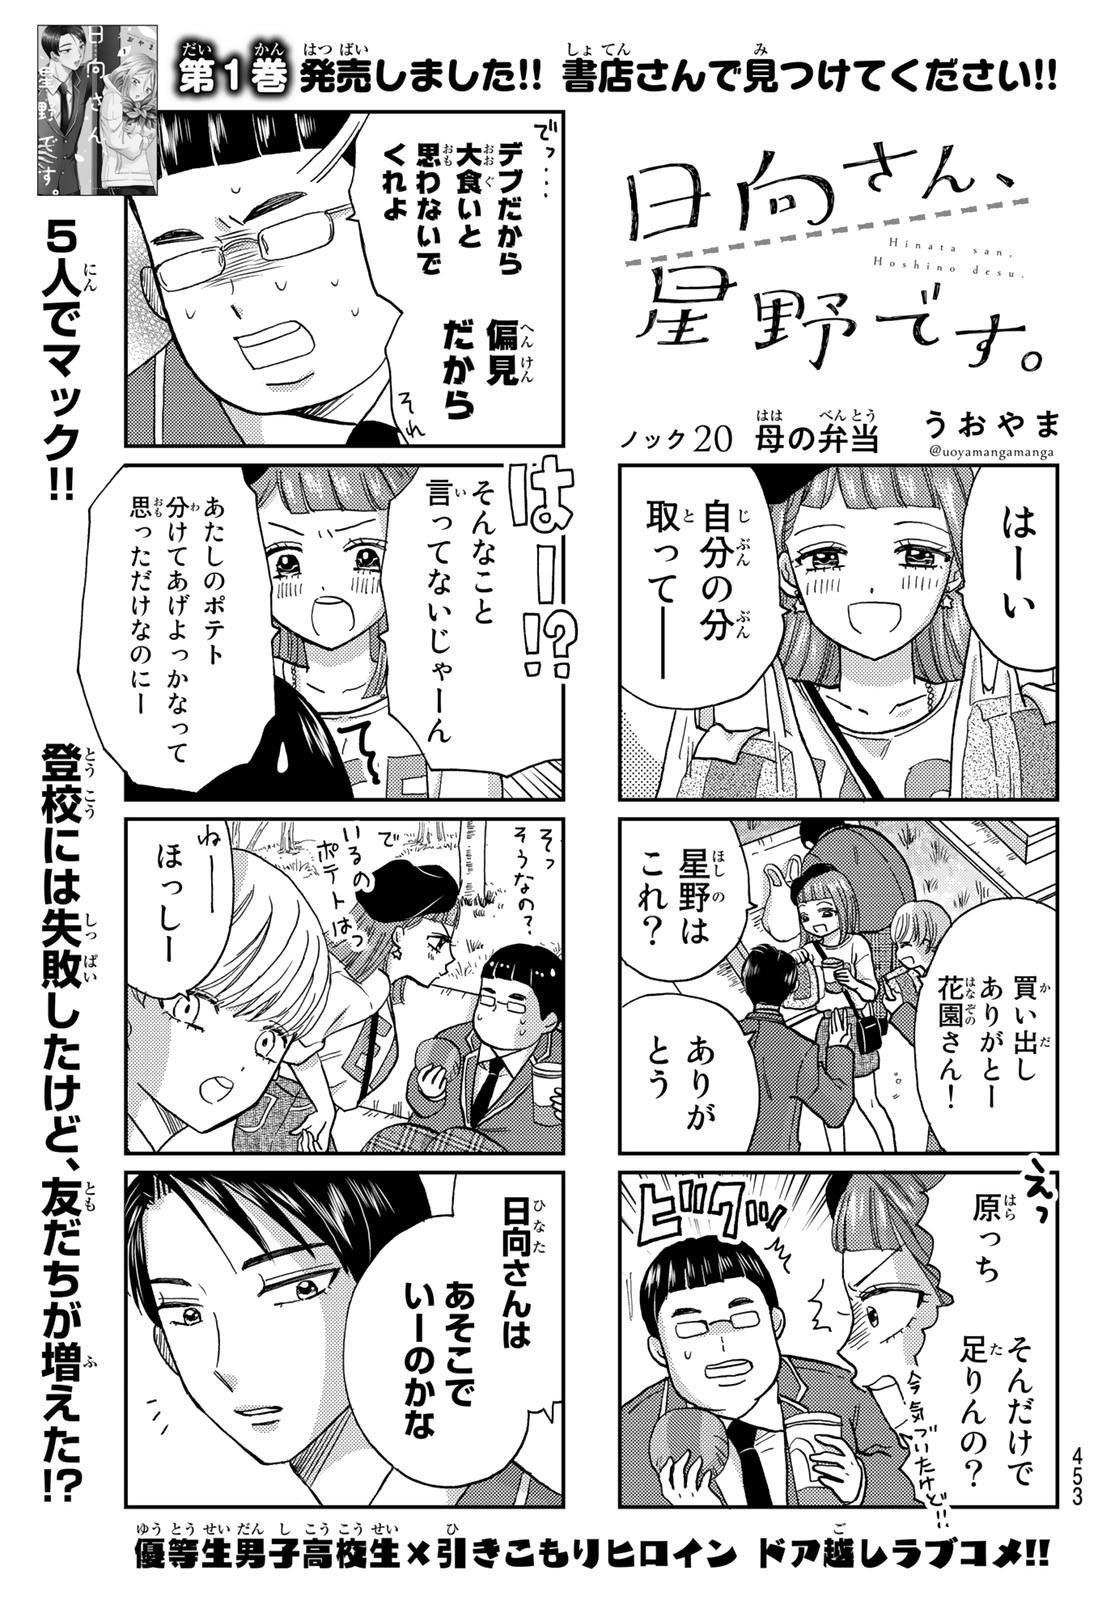 Hinata-san, Hoshino desu. - Chapter 020 - Page 1